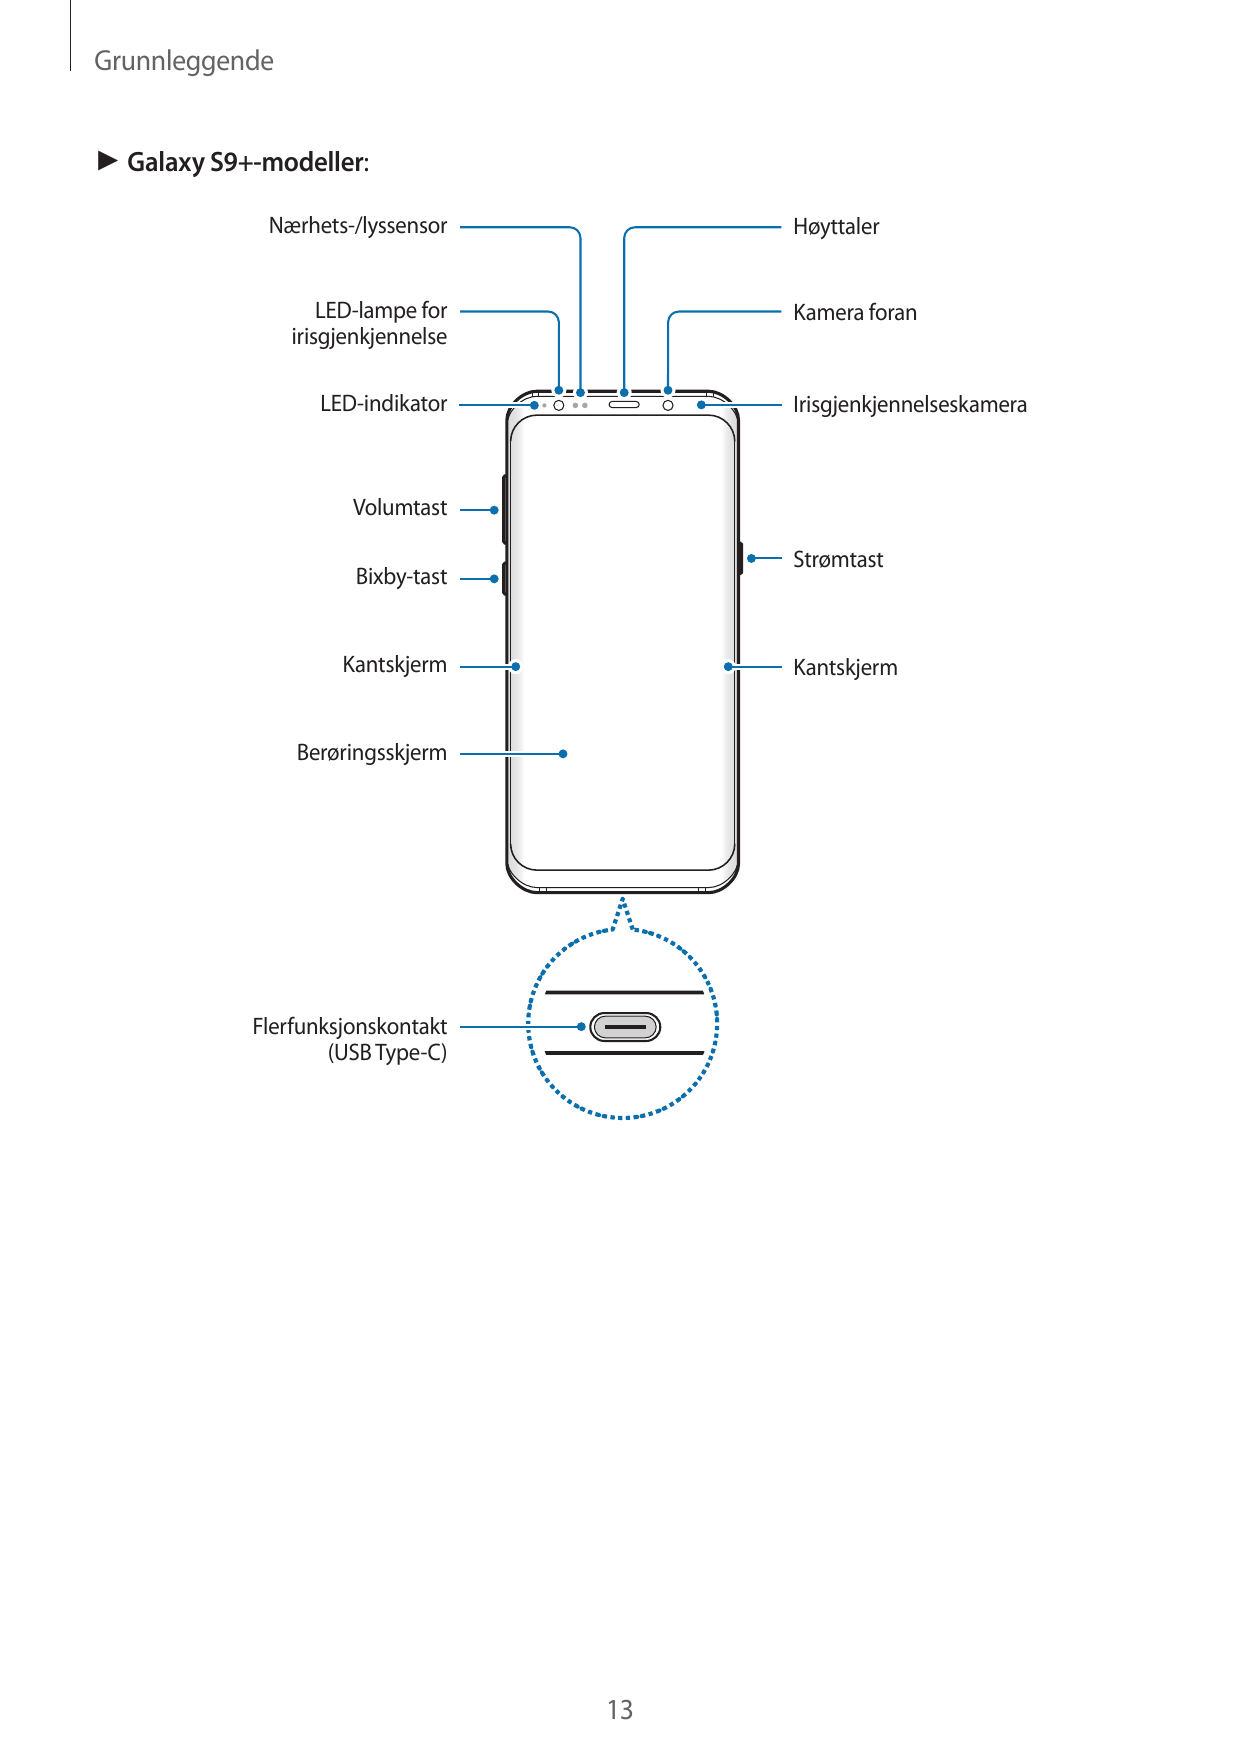 Grunnleggende► Galaxy S9+-modeller:Nærhets-/lyssensorHøyttalerLED-lampe foririsgjenkjennelseKamera foranLED-indikatorIrisgjenkje